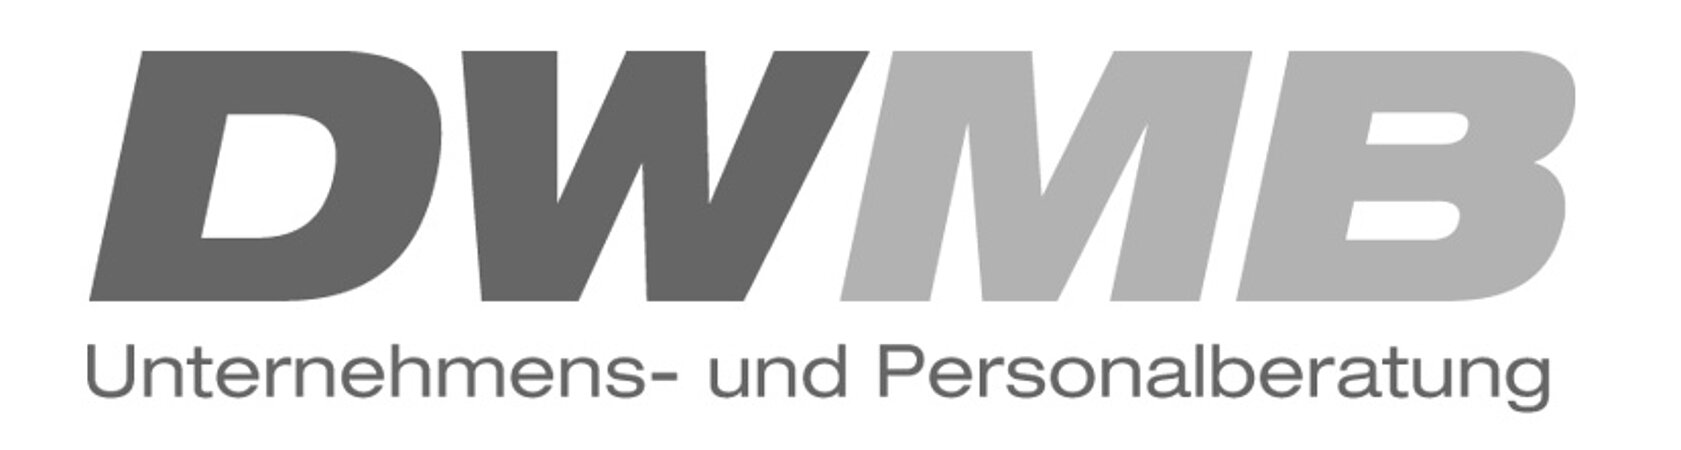 DWMB GmbH: Kundendienstleiter / Head of Technical Service (m/w/d) für den Standort Leonberg/BaWü 